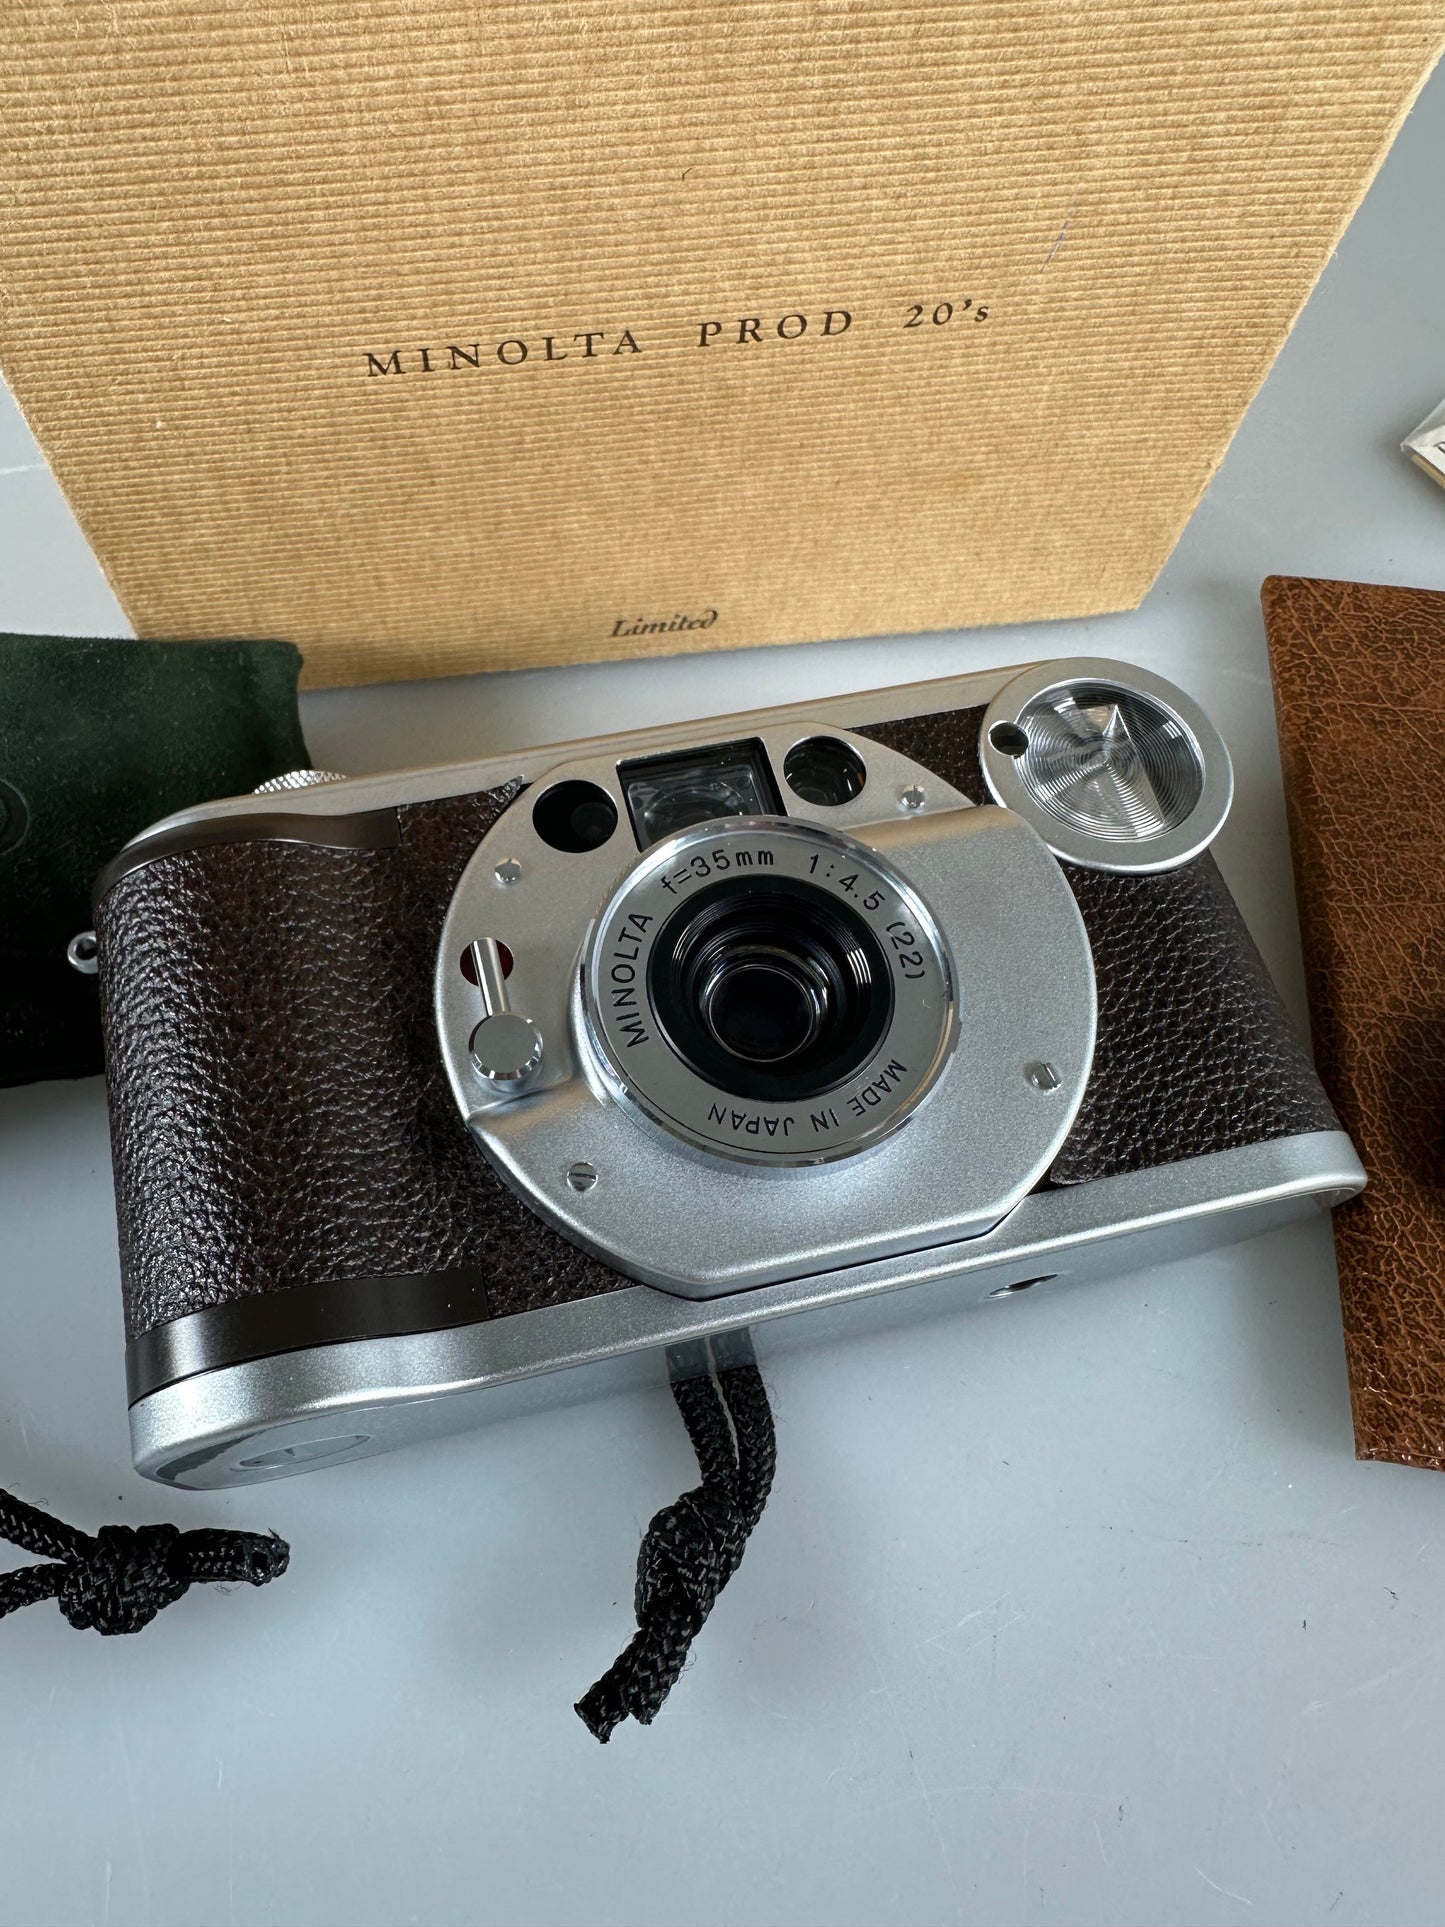 MINOLTA PROD 20's 35mm f4.5 Limited 35mm Film Camera Limited